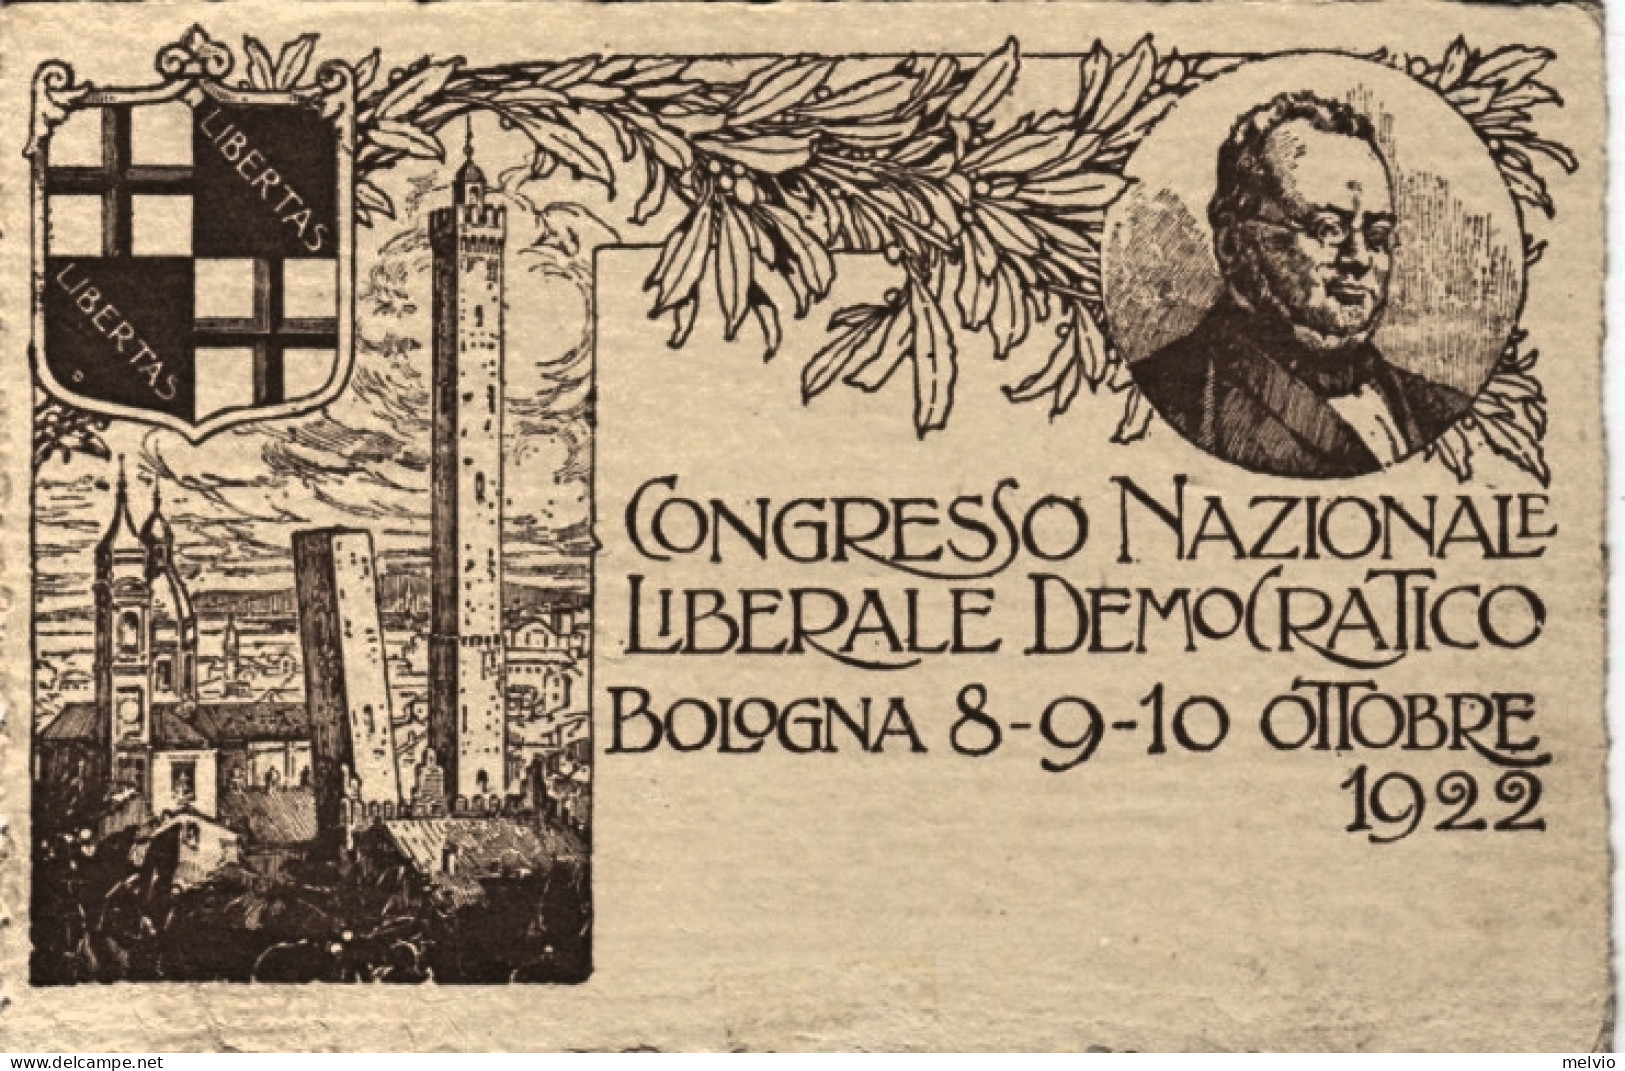 1922-Bologna, Congresso Nazionale Liberale Democratico Bologna 8-9-10 Ottobre192 - Bologna